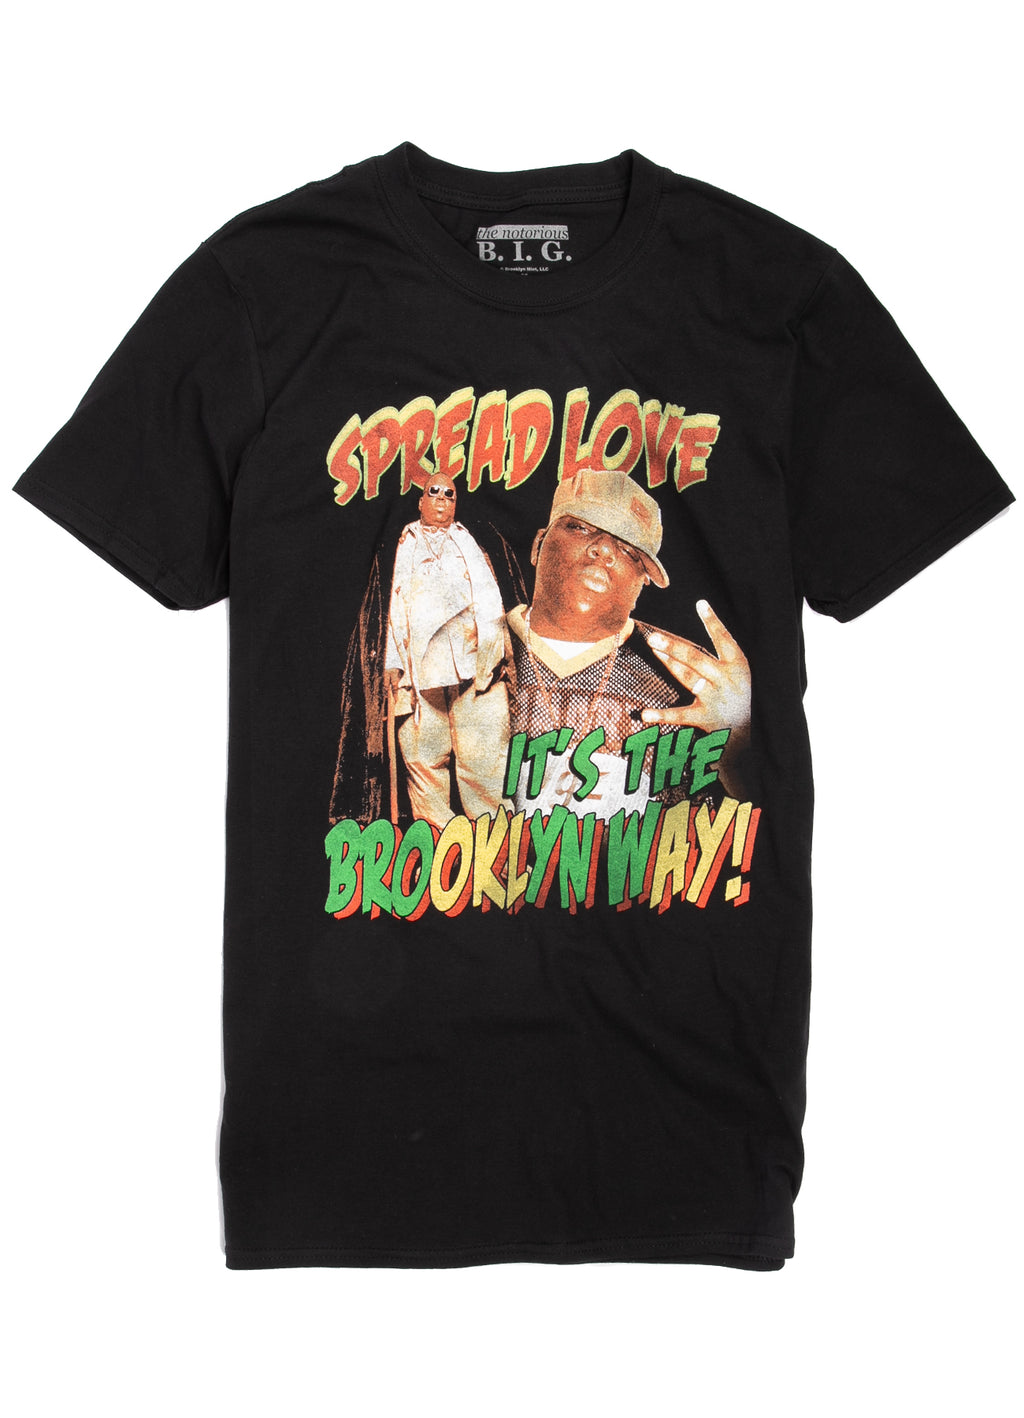 Biggie Smalls spread love, it's the Brooklyn way t-shirt.